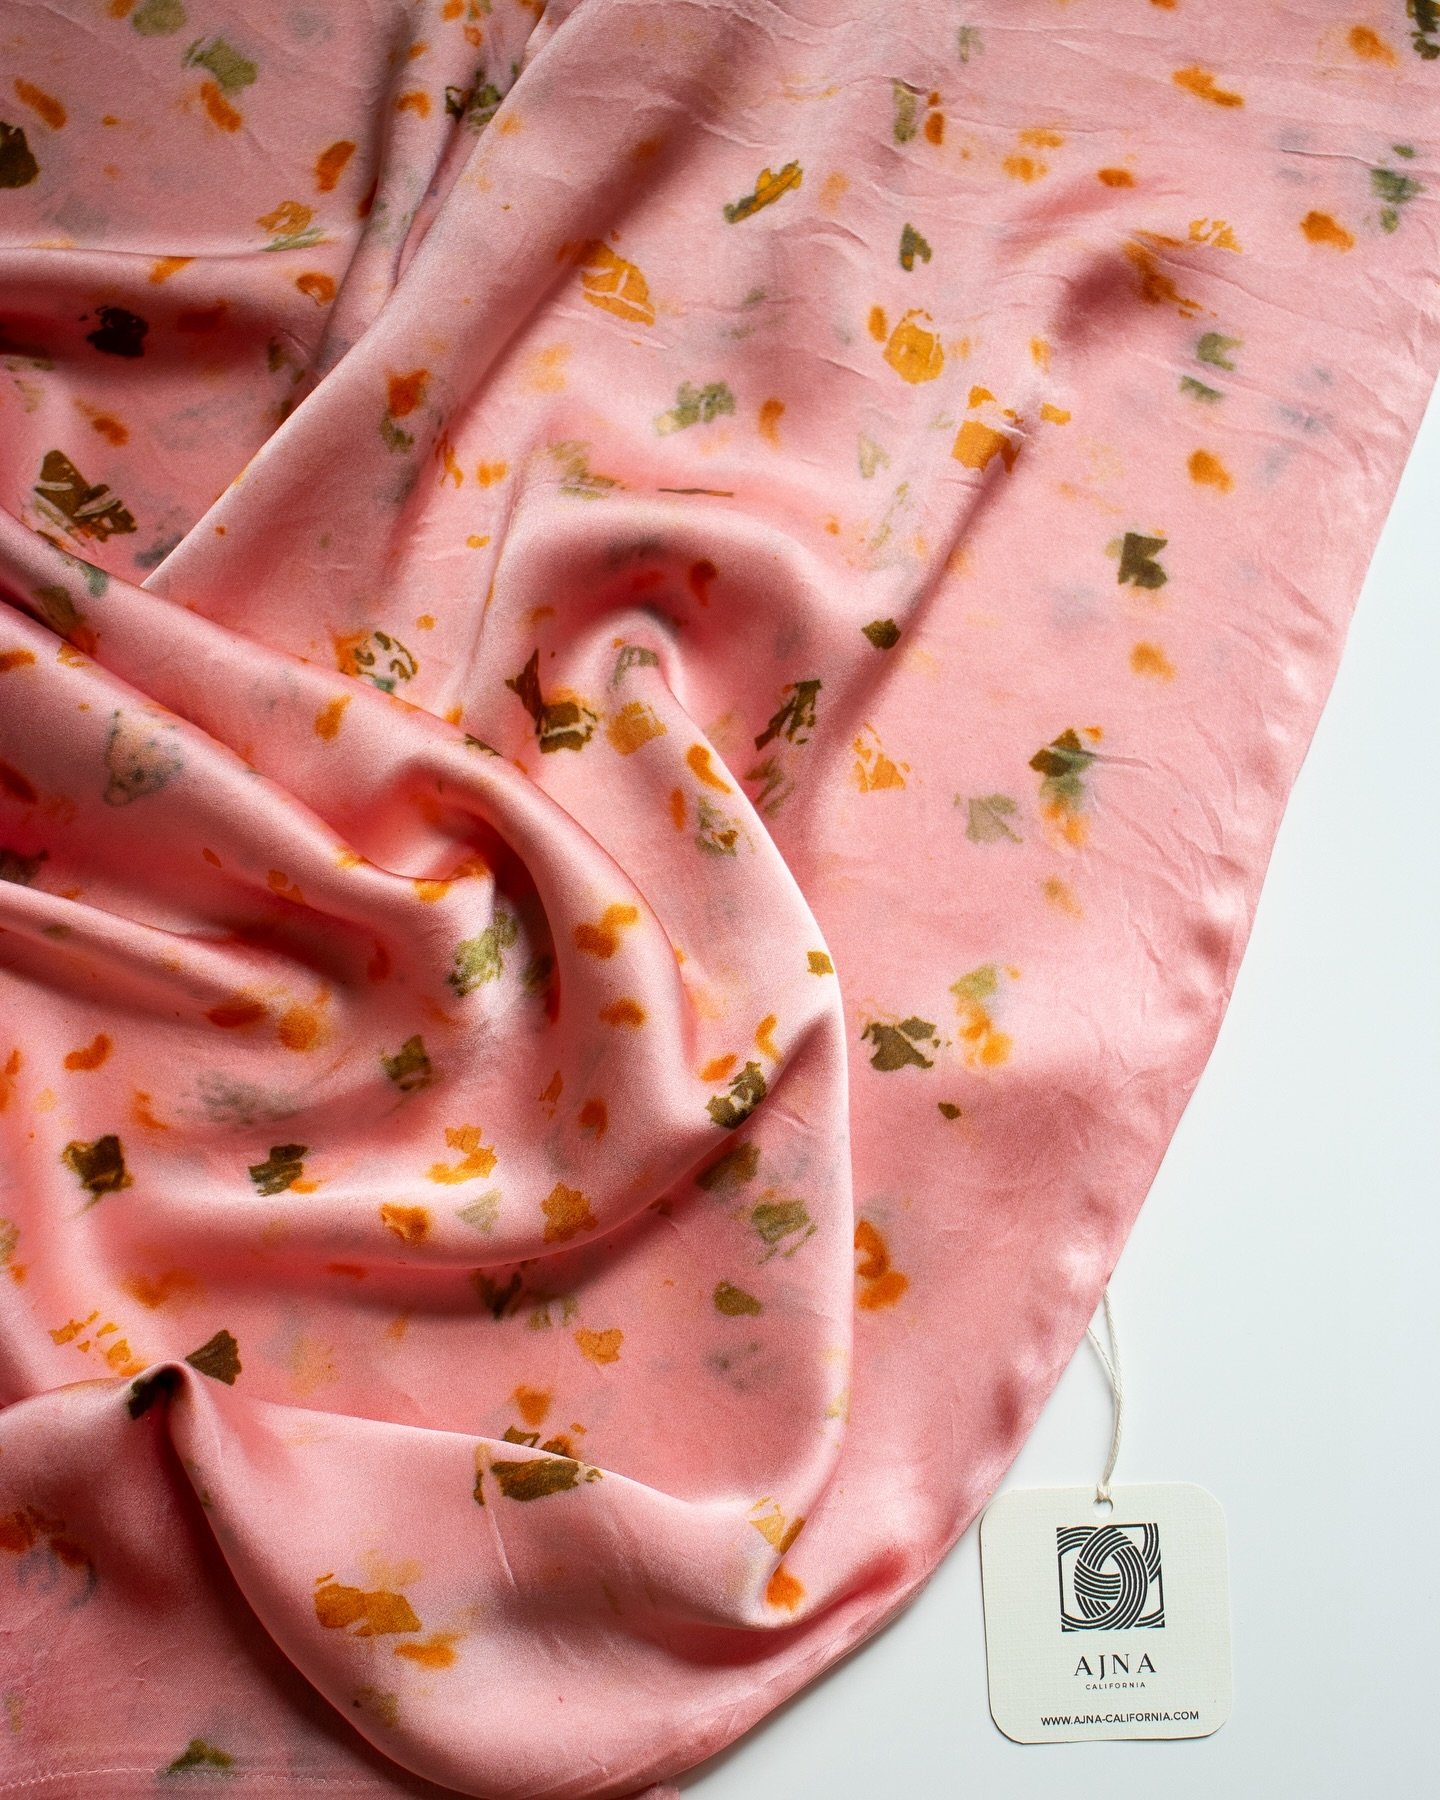 Botanically dyed silk charmeuse pillowcase 🌸

#botanicallydyed #silkpillowcase #oneofakind #ajnacalifornia #plantdyed